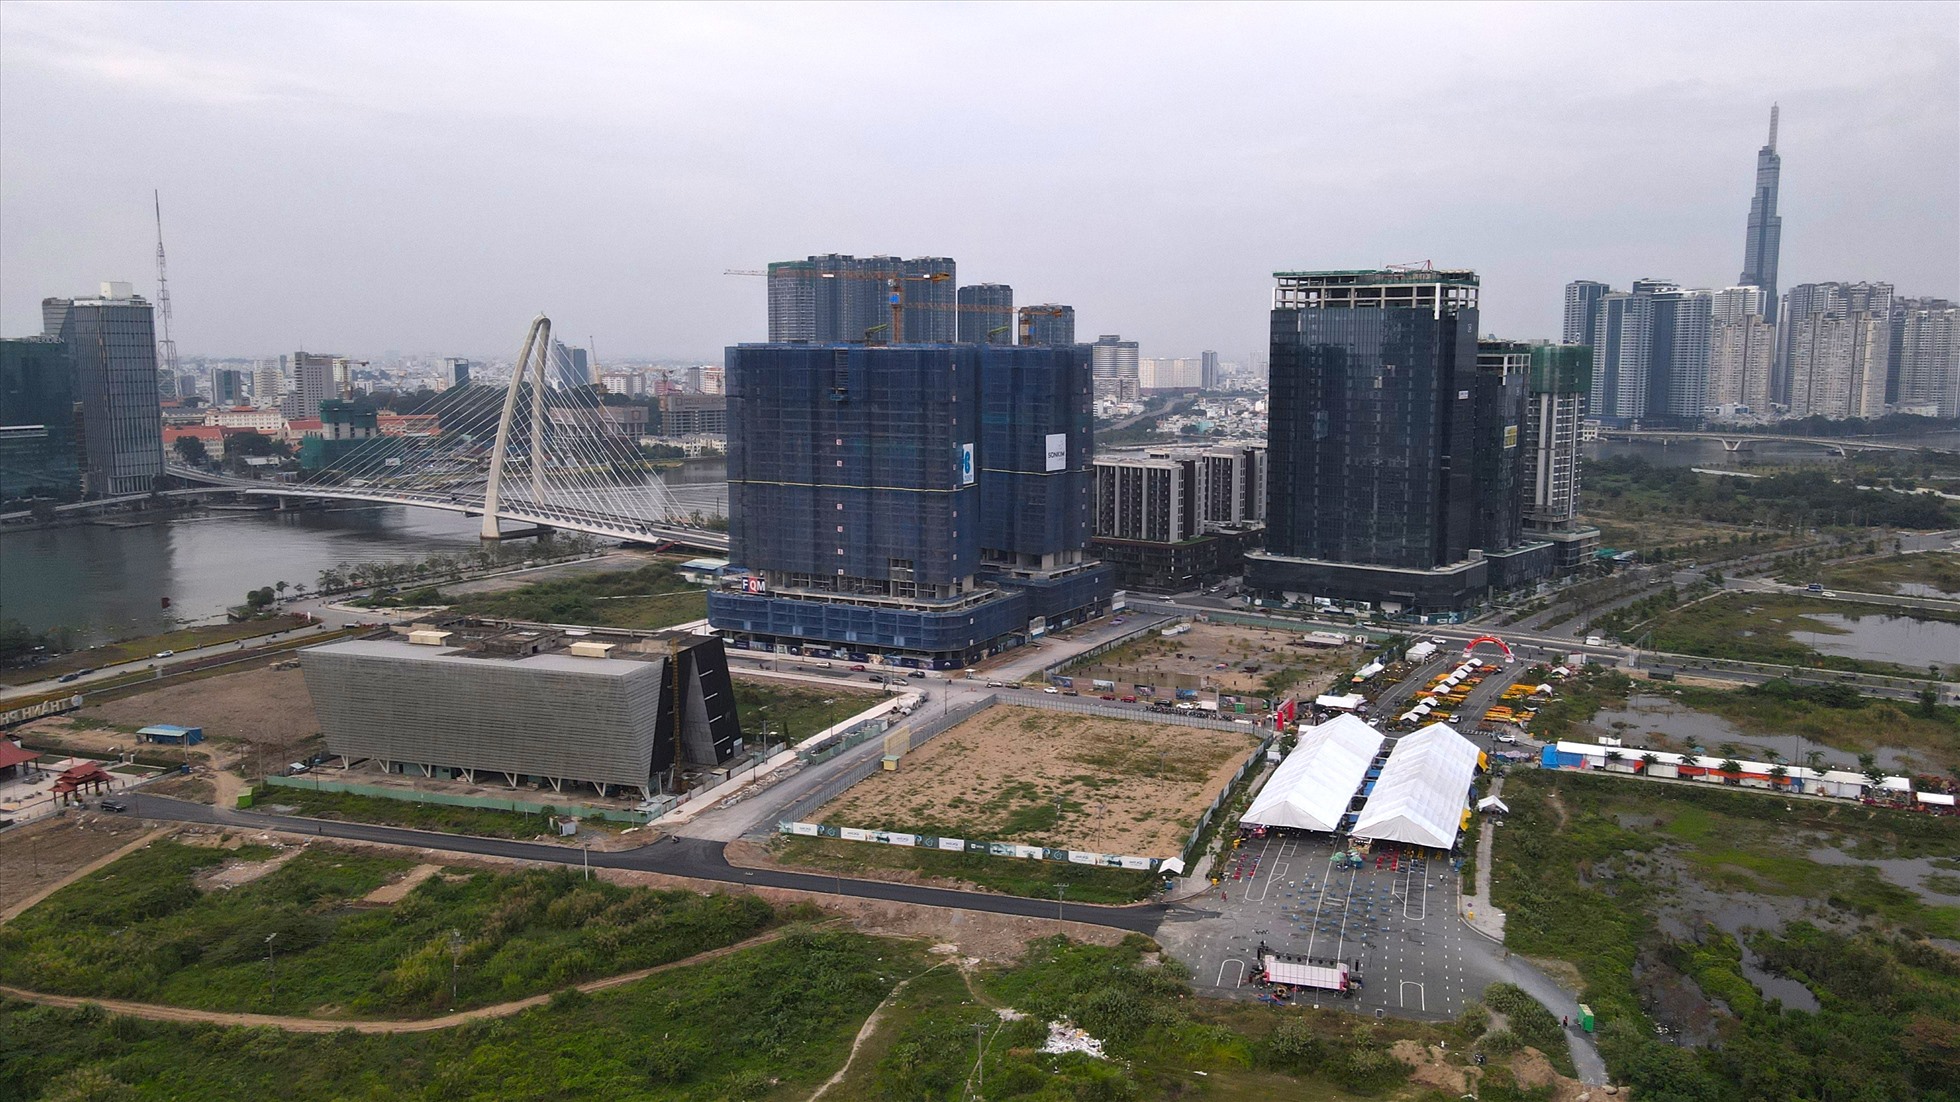 Vào tháng 4.2022 cầu Thủ Thiêm 2 bắc qua sông Sài Gòn đã chính thức được thông xe sau 7 năm trễn hẹn. Cây cầu này có chiều dài gần 1,5 km, kết nối quận 1 với phân khu chức năng số 1 của bán đảo Thủ Thiêm.  Cách cầu Thủ Thiêm 2 không xa là cầu Thủ Thiêm 1, kết nối KĐT Thủ Thiêm với quận Bình Thạnh. Cây cầu này được hoàn thành xây dựng vào năm 2007 với tổng mức đầu tư gần 1.100 tỷ đồng. Vào tháng 4.2022 cầu Thủ Thiêm 2 bắc qua sông Sài Gòn đã chính thức được thông xe sau 7 năm trễn hẹn. Cây cầu này có chiều dài gần 1,5 km, kết nối quận 1 với phân khu chức năng số 1 của bán đảo Thủ Thiêm.  Cách cầu Thủ Thiêm 2 không xa là cầu Thủ Thiêm 1, kết nối KĐT Thủ Thiêm với quận Bình Thạnh. Cây cầu này được hoàn thành xây dựng vào năm 2007 với tổng mức đầu tư gần 1.100 tỷ đồng. Vào tháng 4.2022 cầu Ba Son (Thủ Thiêm 2) bắc qua sông Sài Gòn đã chính thức được thông xe sau 7 năm trễn hẹn. Cây cầu này có chiều dài gần 1,5 km, kết nối quận 1 với phân khu chức năng số 1 của bán đảo Thủ Thiêm. Cách cầu Ba Son không xa là cầu Thủ Thiêm 1, đã đưa vào sử dụng năm 2007, kết nối từ quận Bình Thạnh.  Trong tương lai Cầu Thủ Thiêm 3 và 4 sẽ nối quận 4, quận 7 với Khu đô thị Thủ Thiêm cũng sẽ được đầu tư. Các công trình khi hoàn thành sẽ kết nối, hình thành hệ thống giao thông hoàn chỉnh cho khu vực và khu đô thị mới này